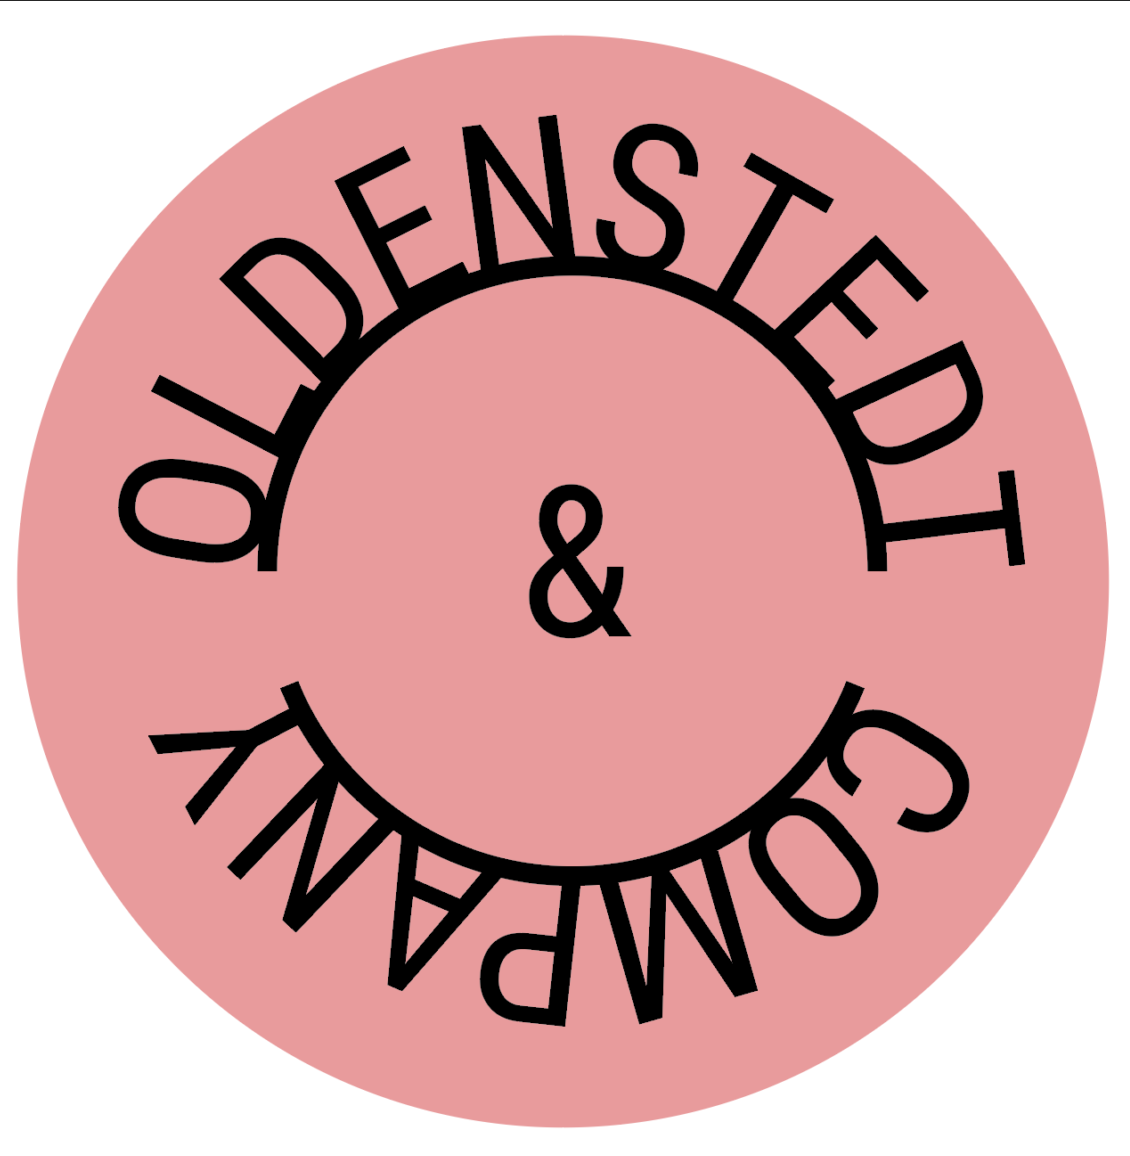 Oldenstedt & Co